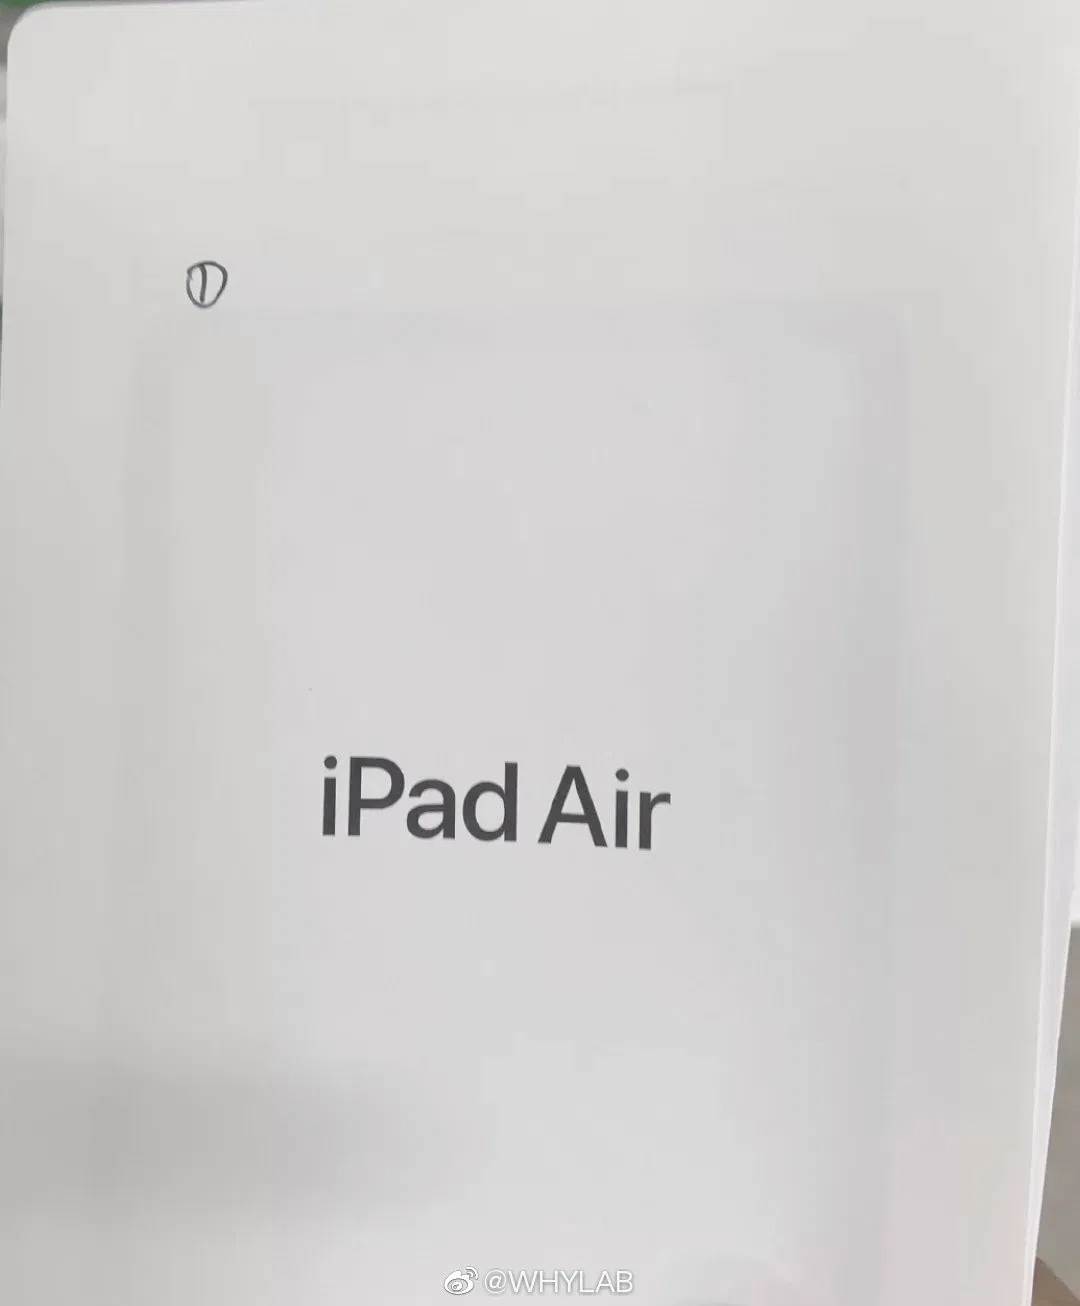 Wyciekły zdjęcia instrukcji obsługi iPad Air 2020. Urządzenie ma zupełnie nowy wygląd i Touch ID w przycisku zasilania polecane, ciekawostki iPad Air 4g, iPad Air 4-gen, iPad Air 2020, Apple  W chińskim serwisie społecznościowym Weibo pojawiły się zdjęcia instrukcji obsługi przyszłego tabletu Apple iPad Air 2020, który według plotek może zostać zaprezentowane na początku września.
 Air1